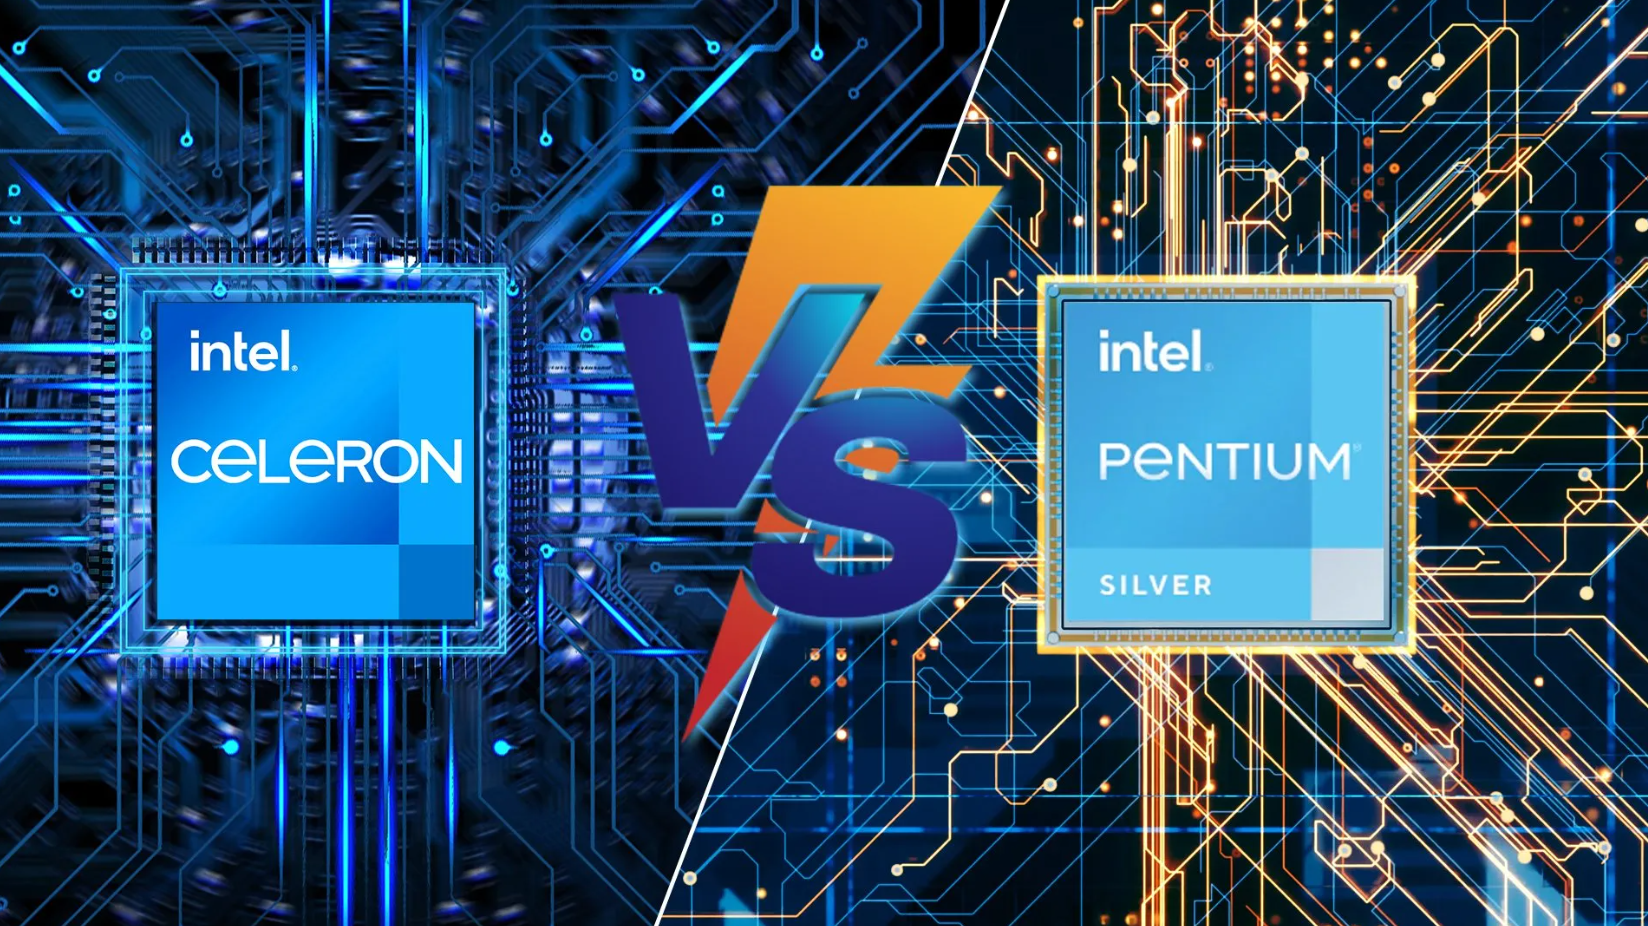 Intel Celeron Vs Pentium